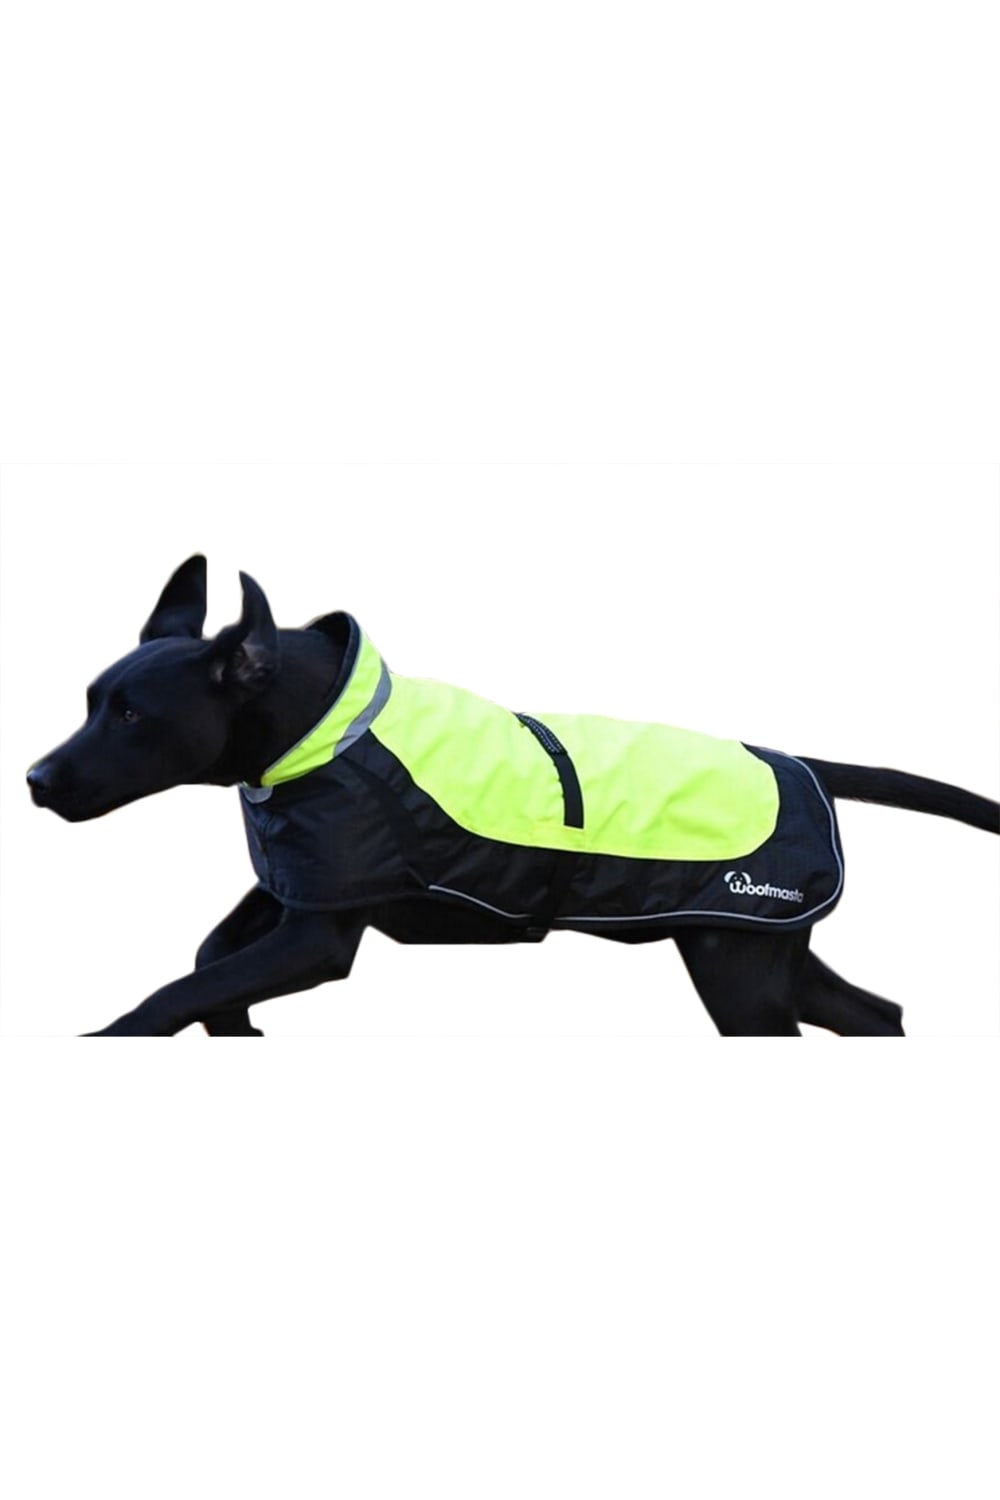 Woofmasta Hi-Viz Flashing Dog Coat (Fluorescent Yellow) (8 inches)